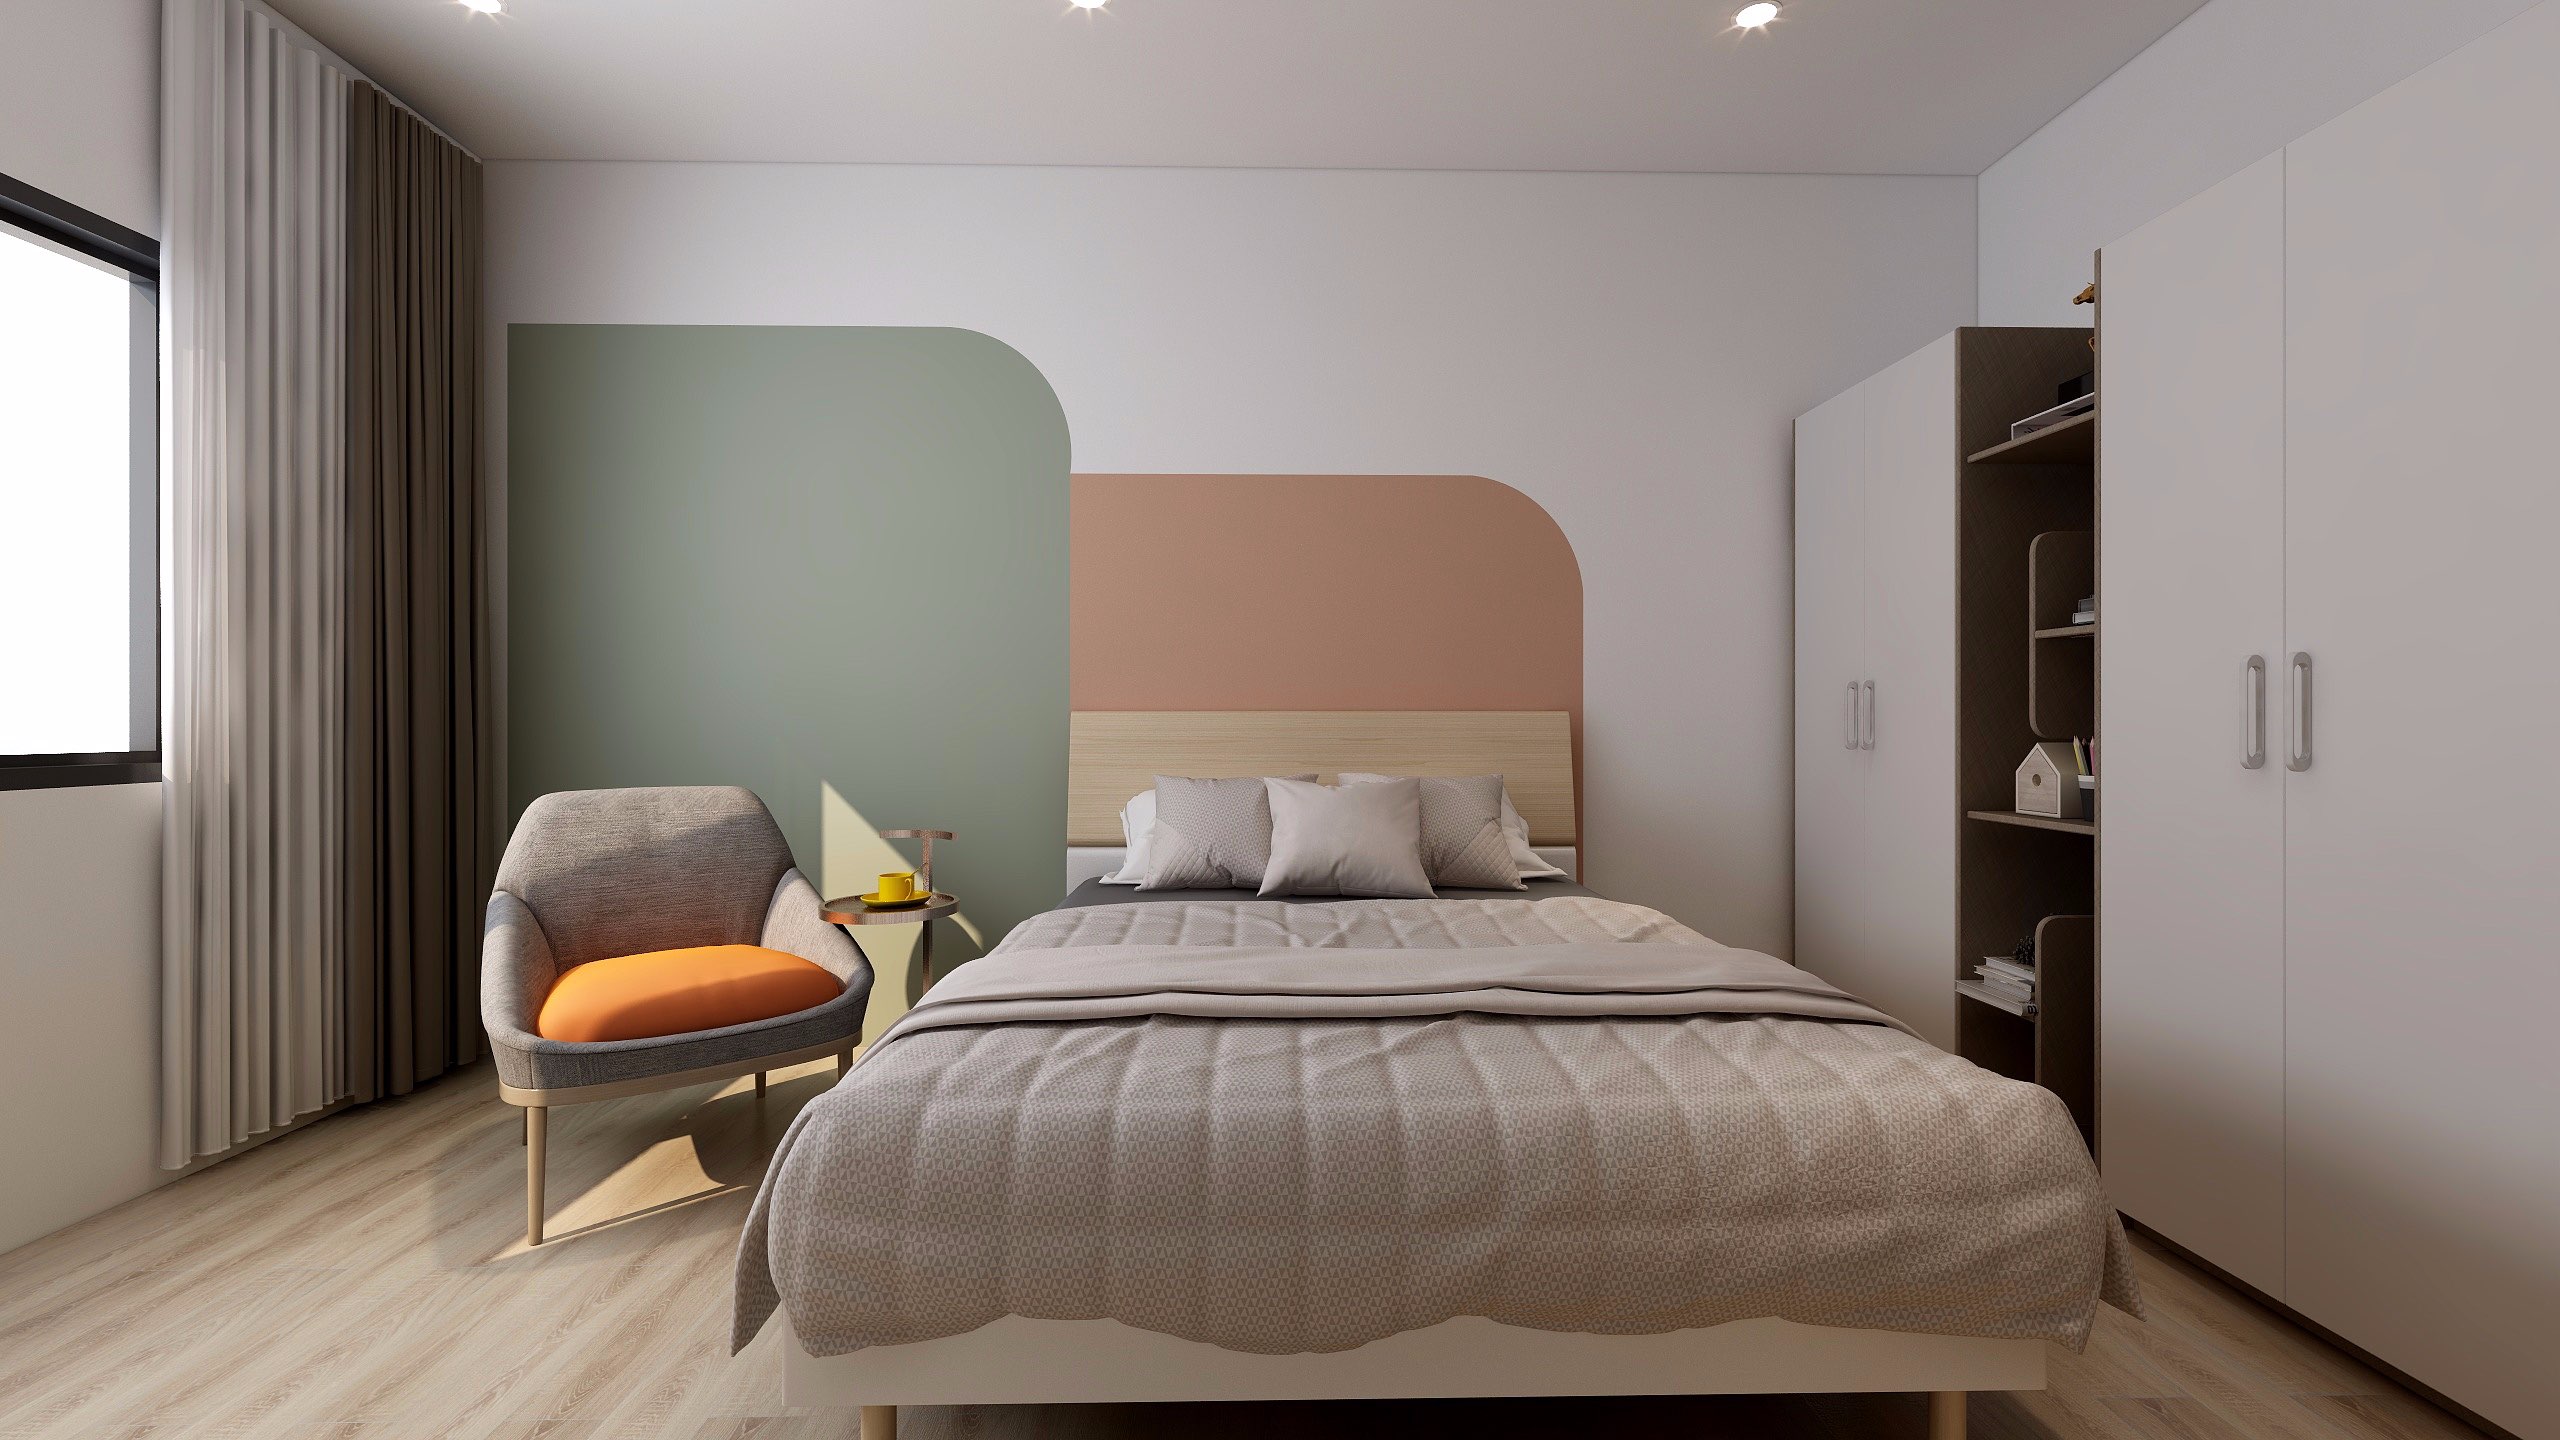 Mẫu giường ngủ cá tính phù hợp với những không gian thiết kế hiện đại, nghệ thuật.